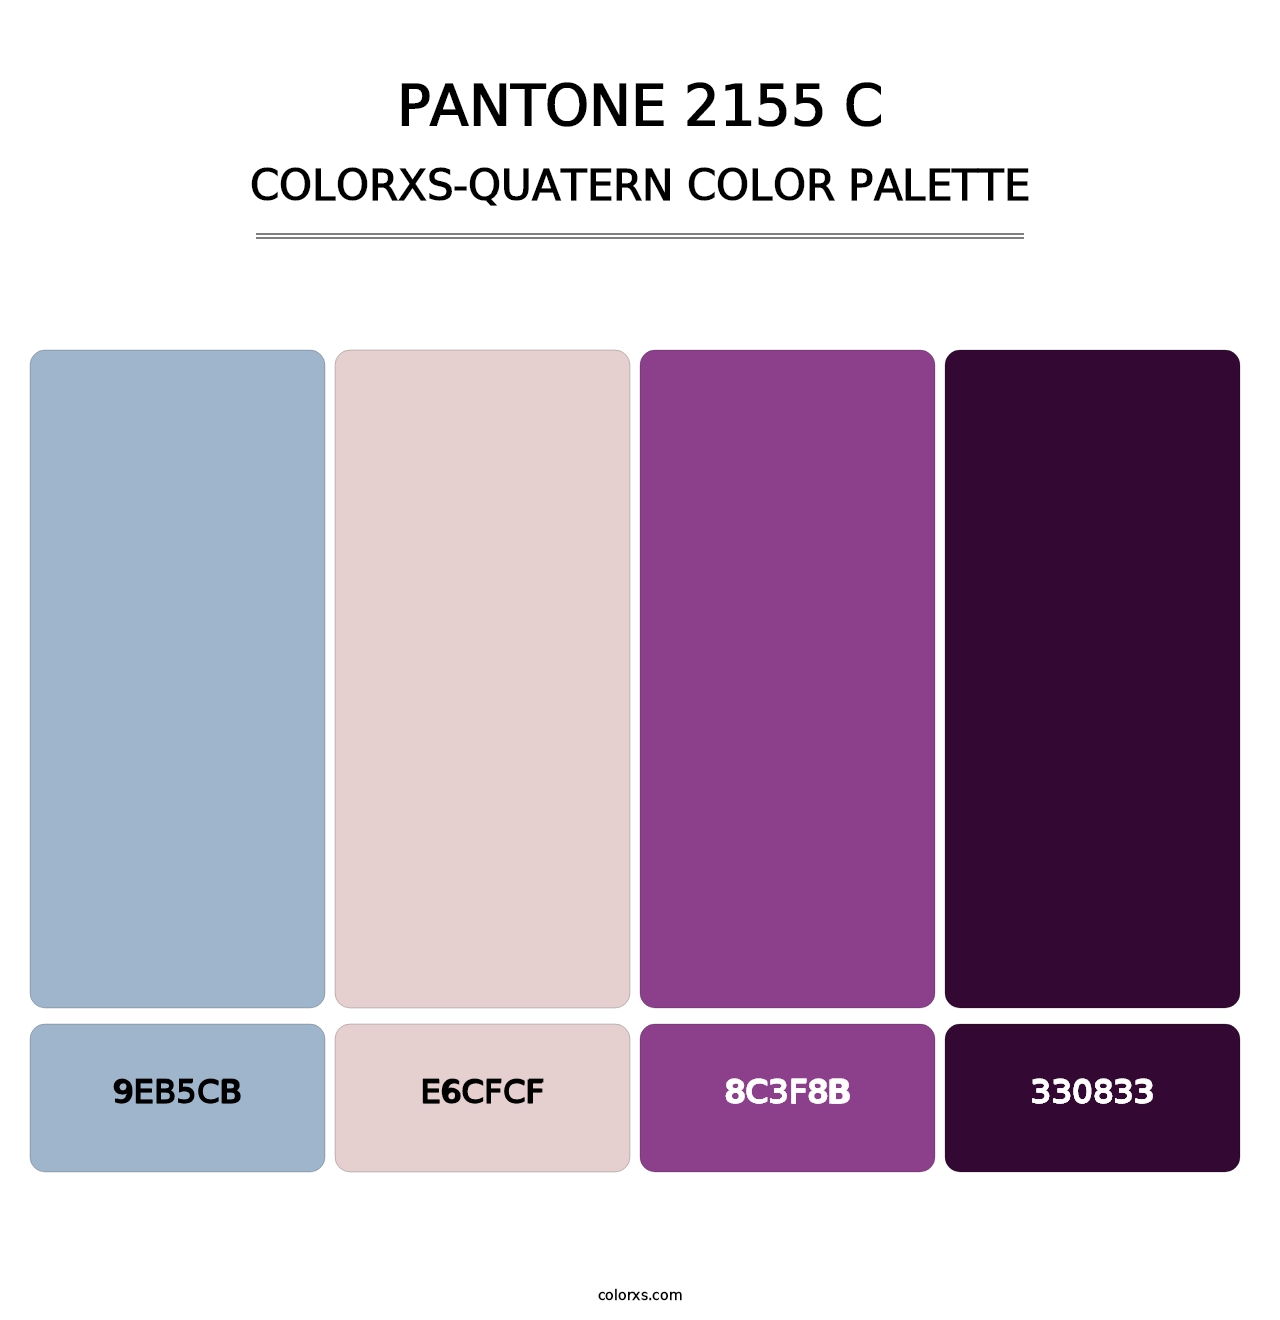 PANTONE 2155 C - Colorxs Quatern Palette